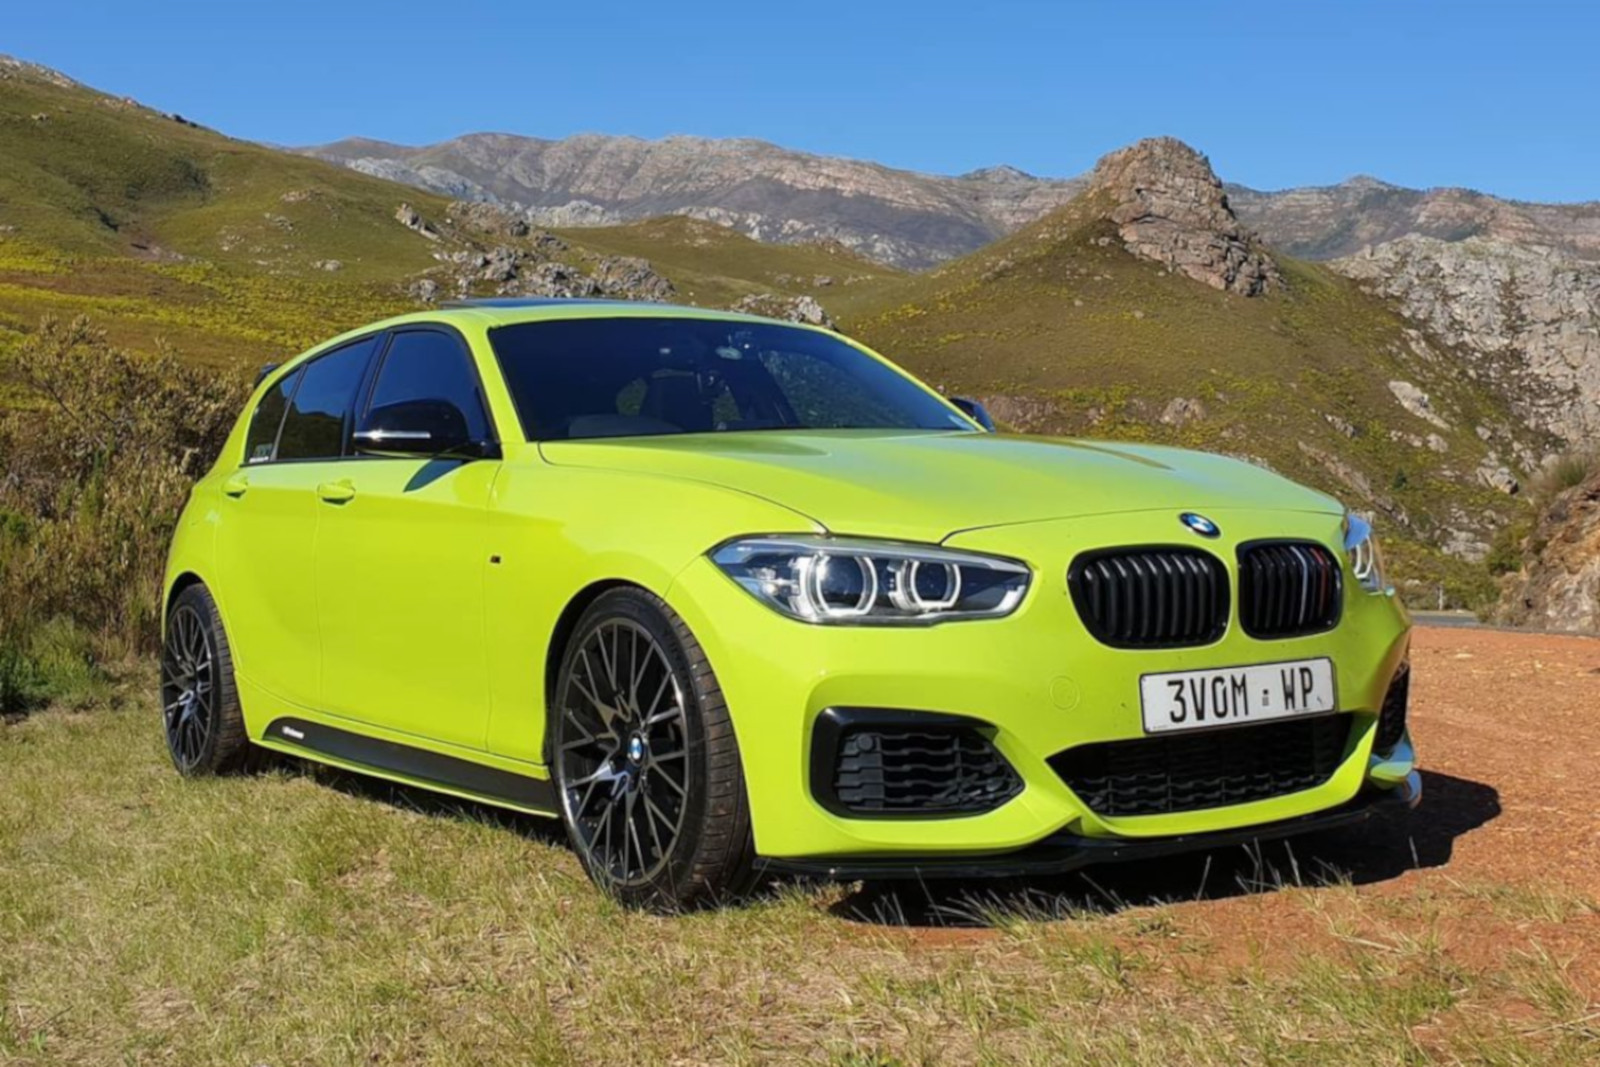 https://cdn.bimmertoday.de/wp-content/uploads/2020/12/BMW-1er-F20-LCI-Birch-Green-Folierung-t.jpg